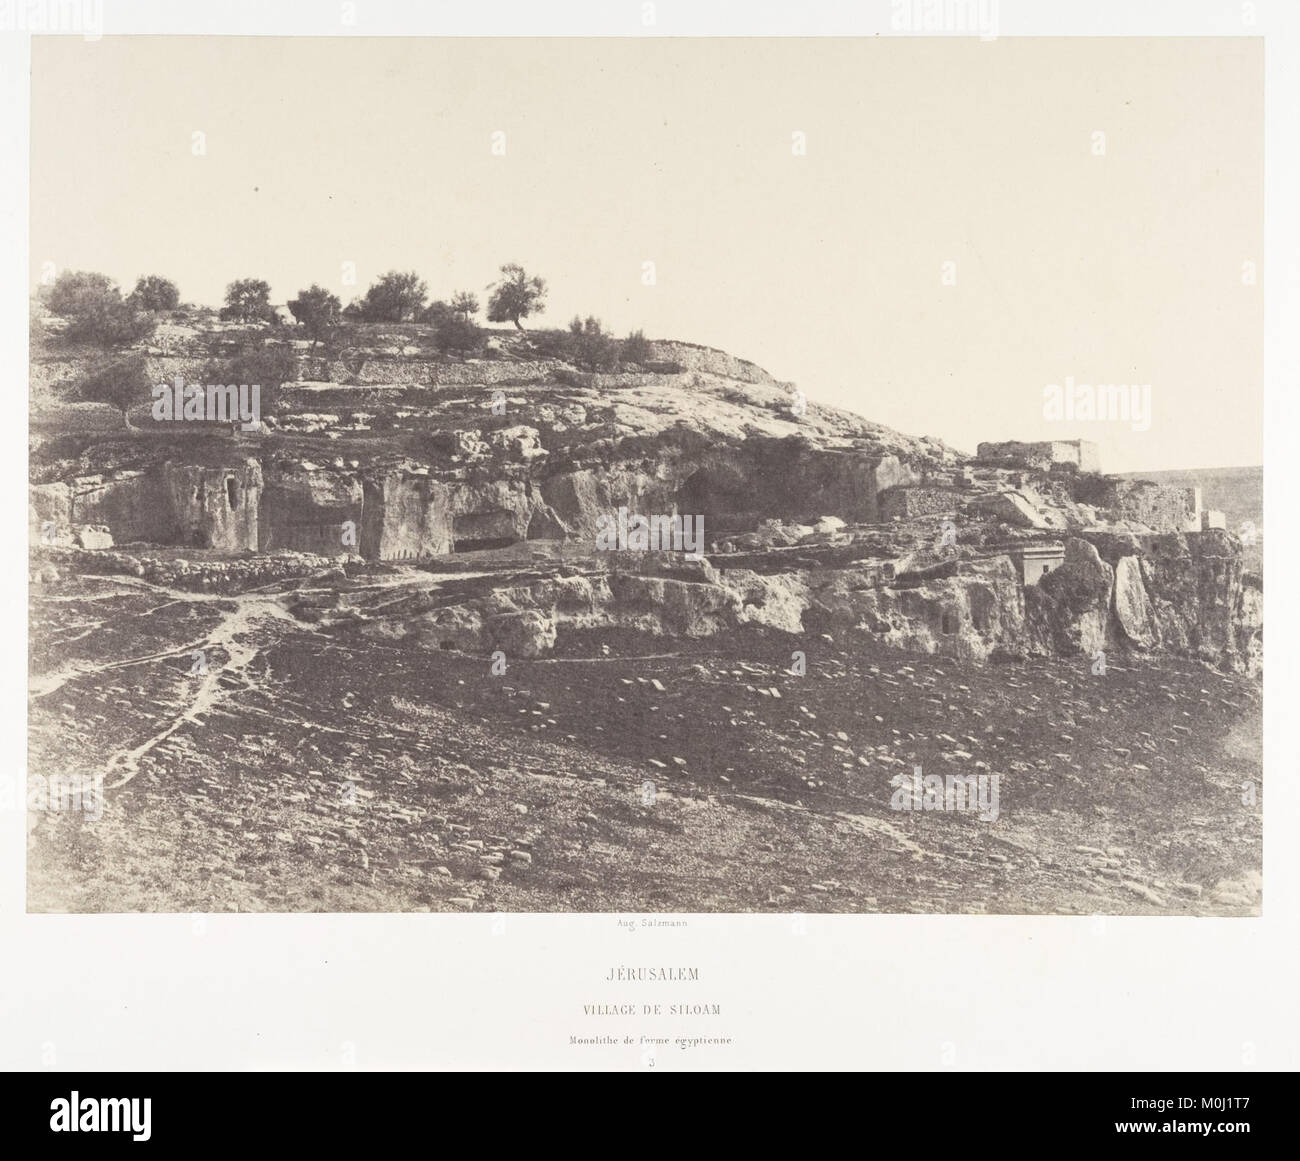 Jérusalem, Village de Siloam, Monolithe de forme égyptienne, 3 MET DP131259 Stock Photo